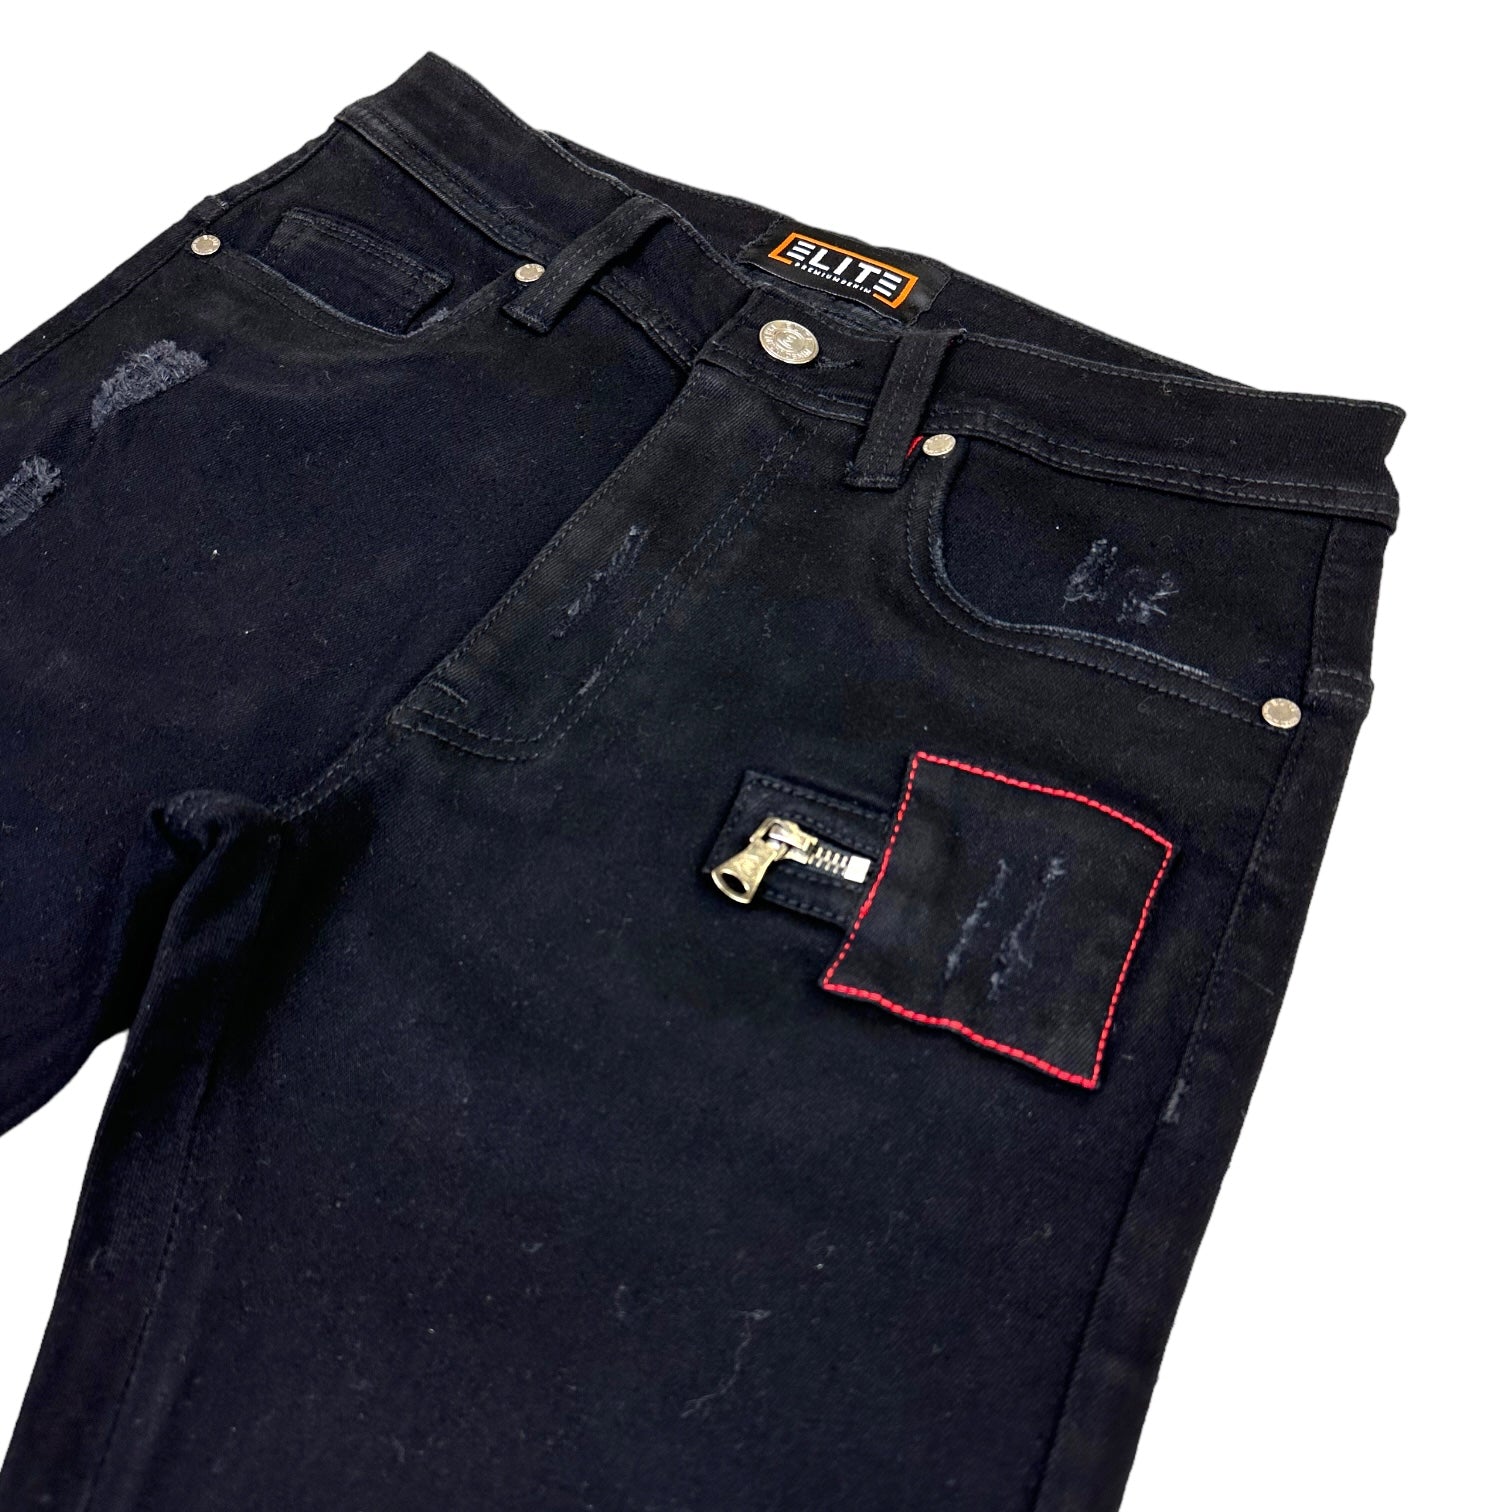 MMNF V2 Premium Men's Stacked Jeans